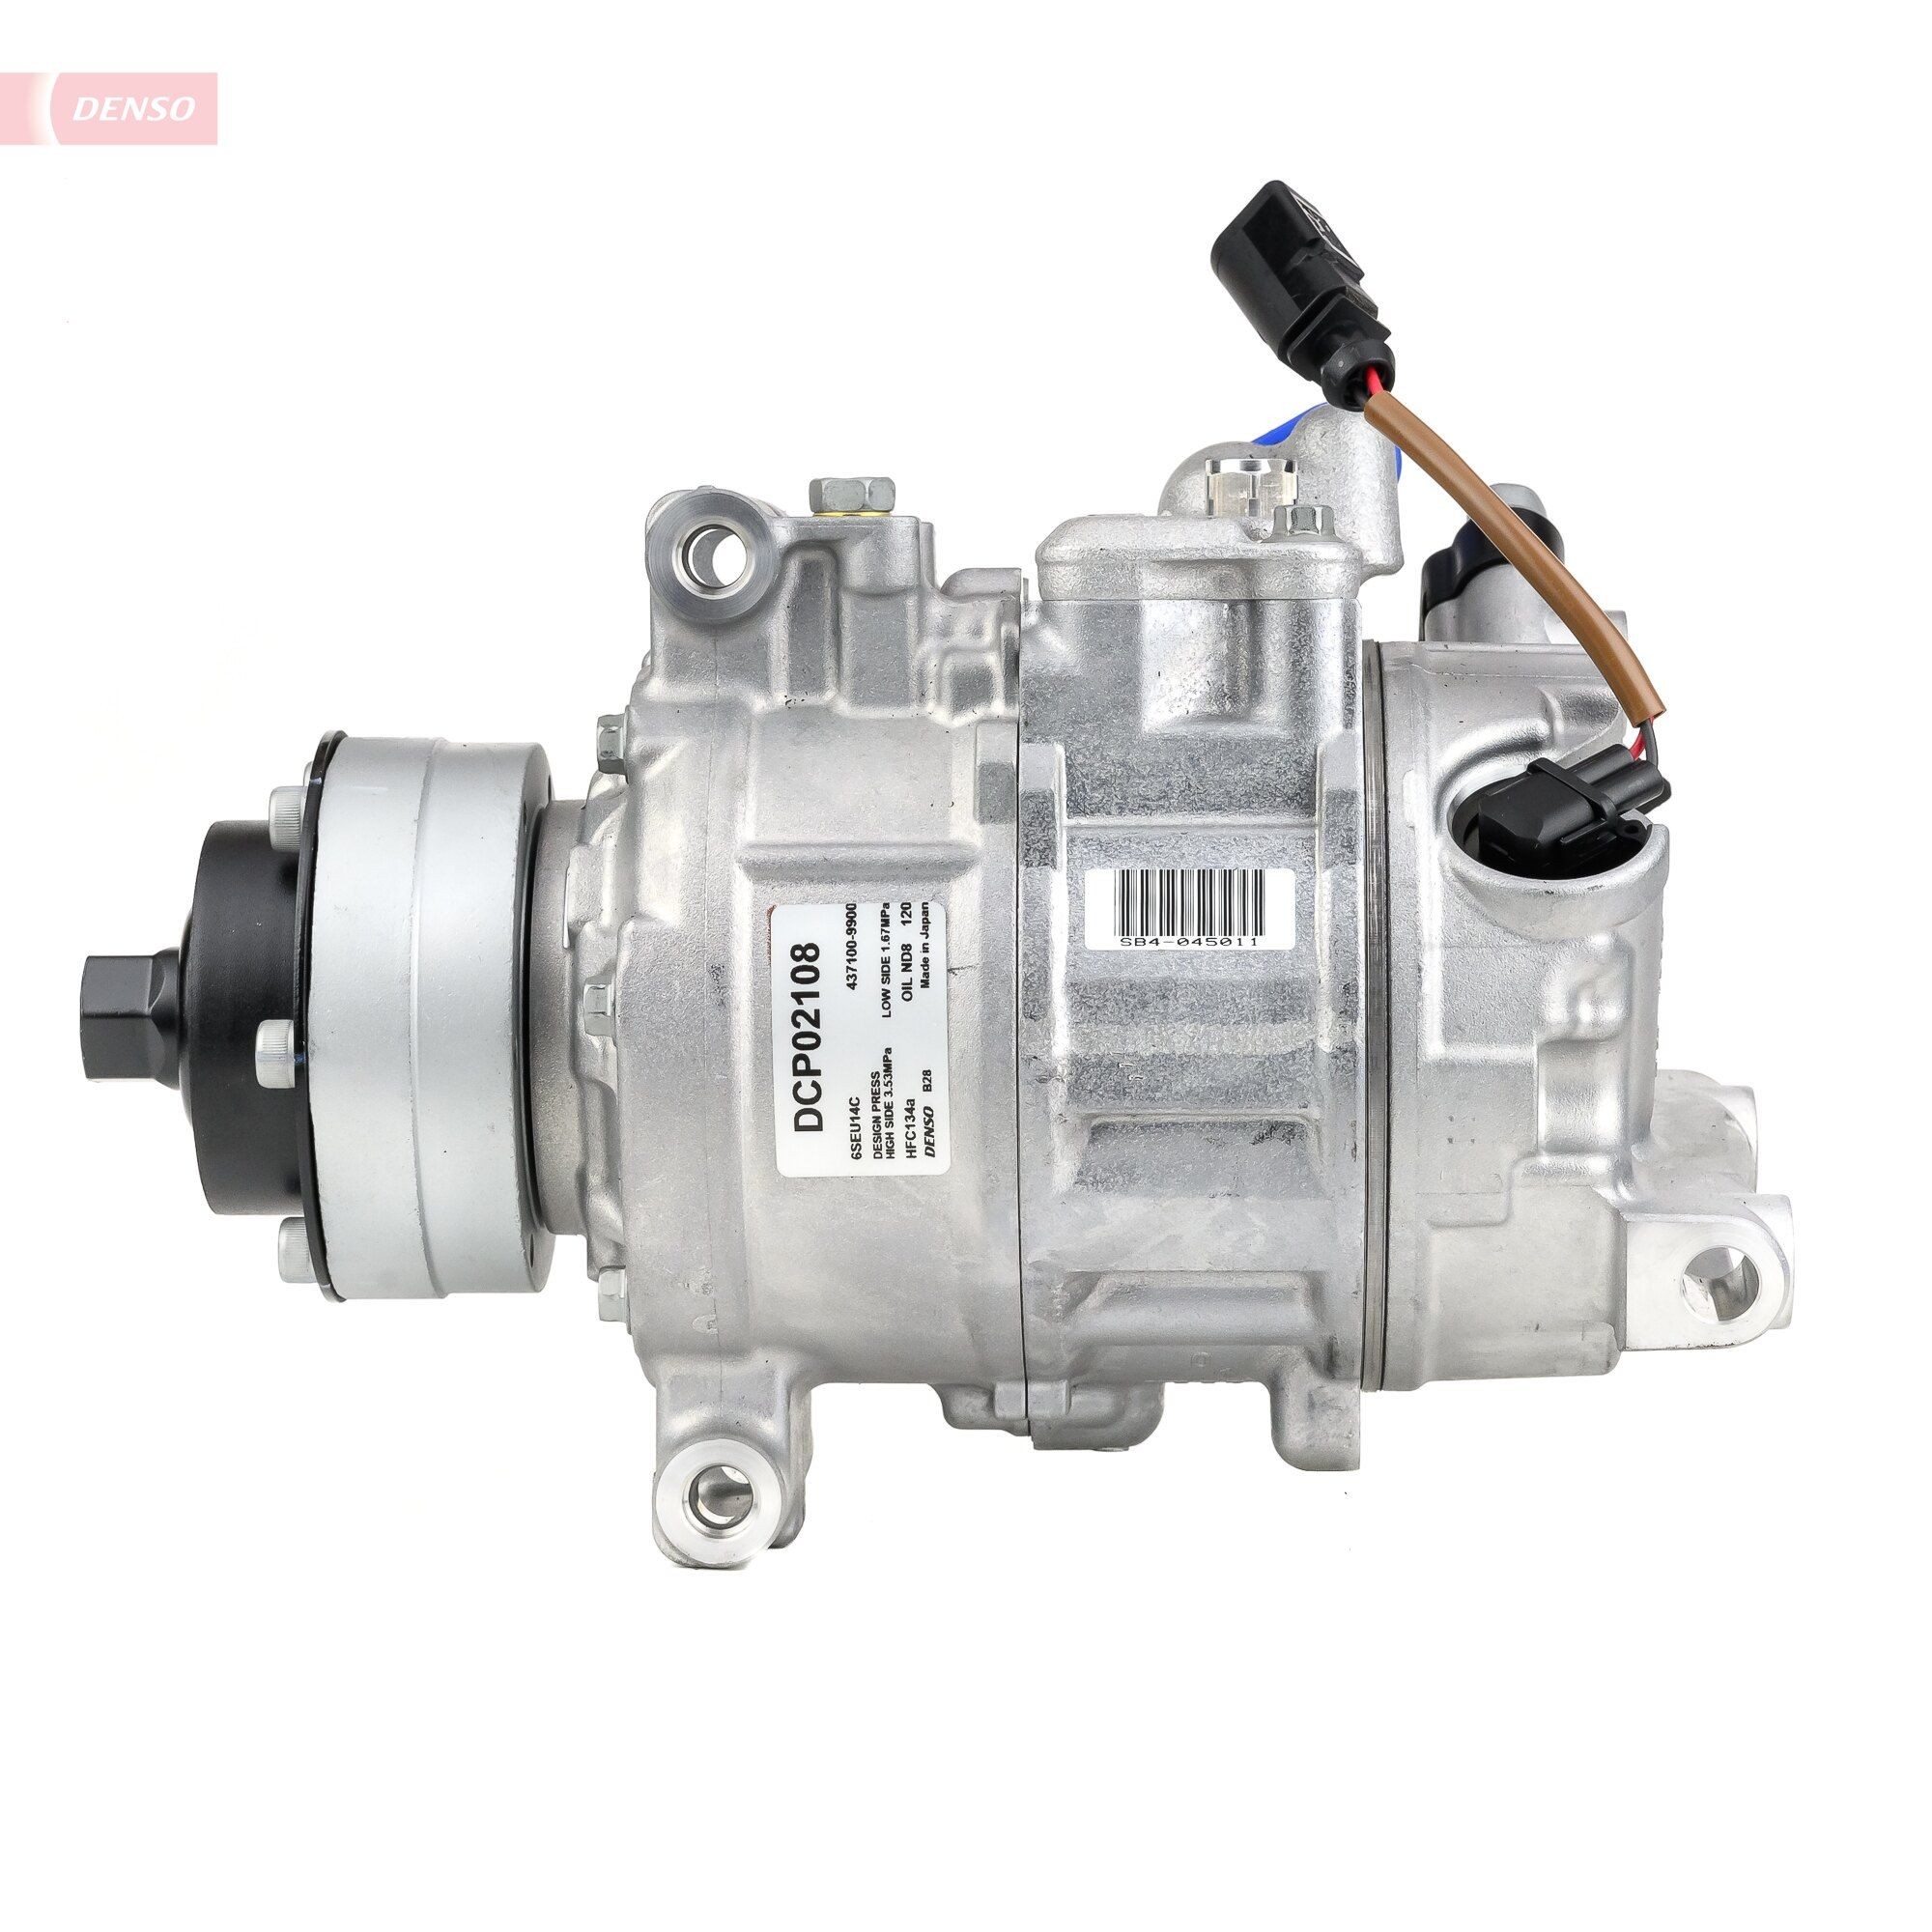 DENSO Aircon compressor DCP17186 buy online